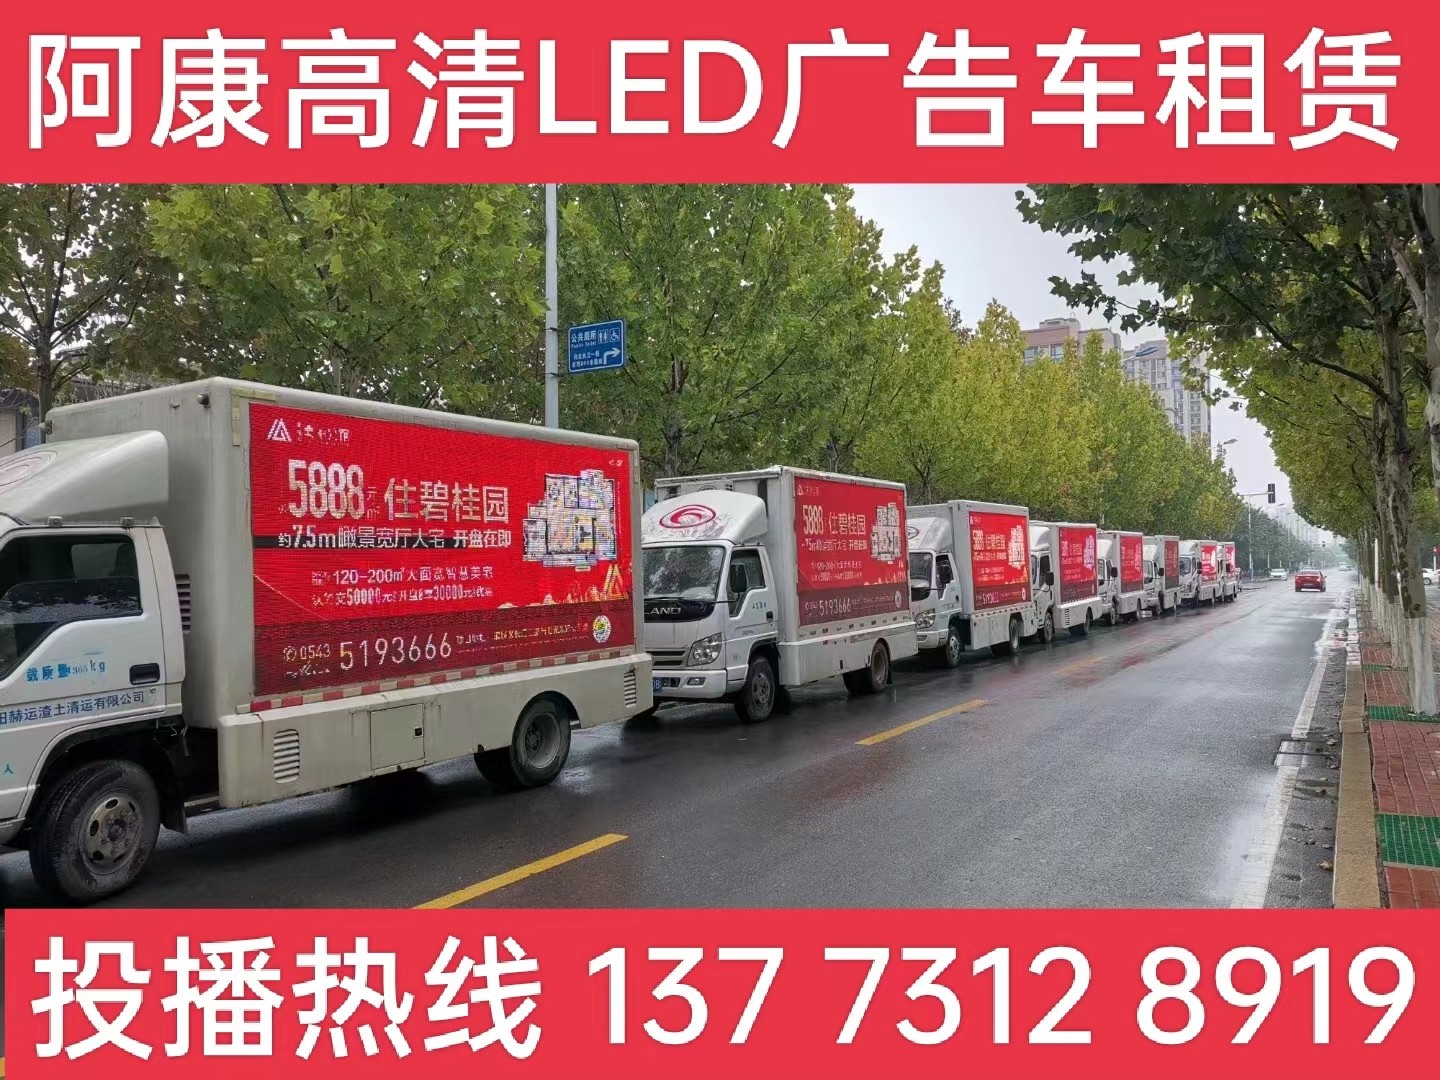 江都区宣传车租赁公司-楼盘LED广告车投放